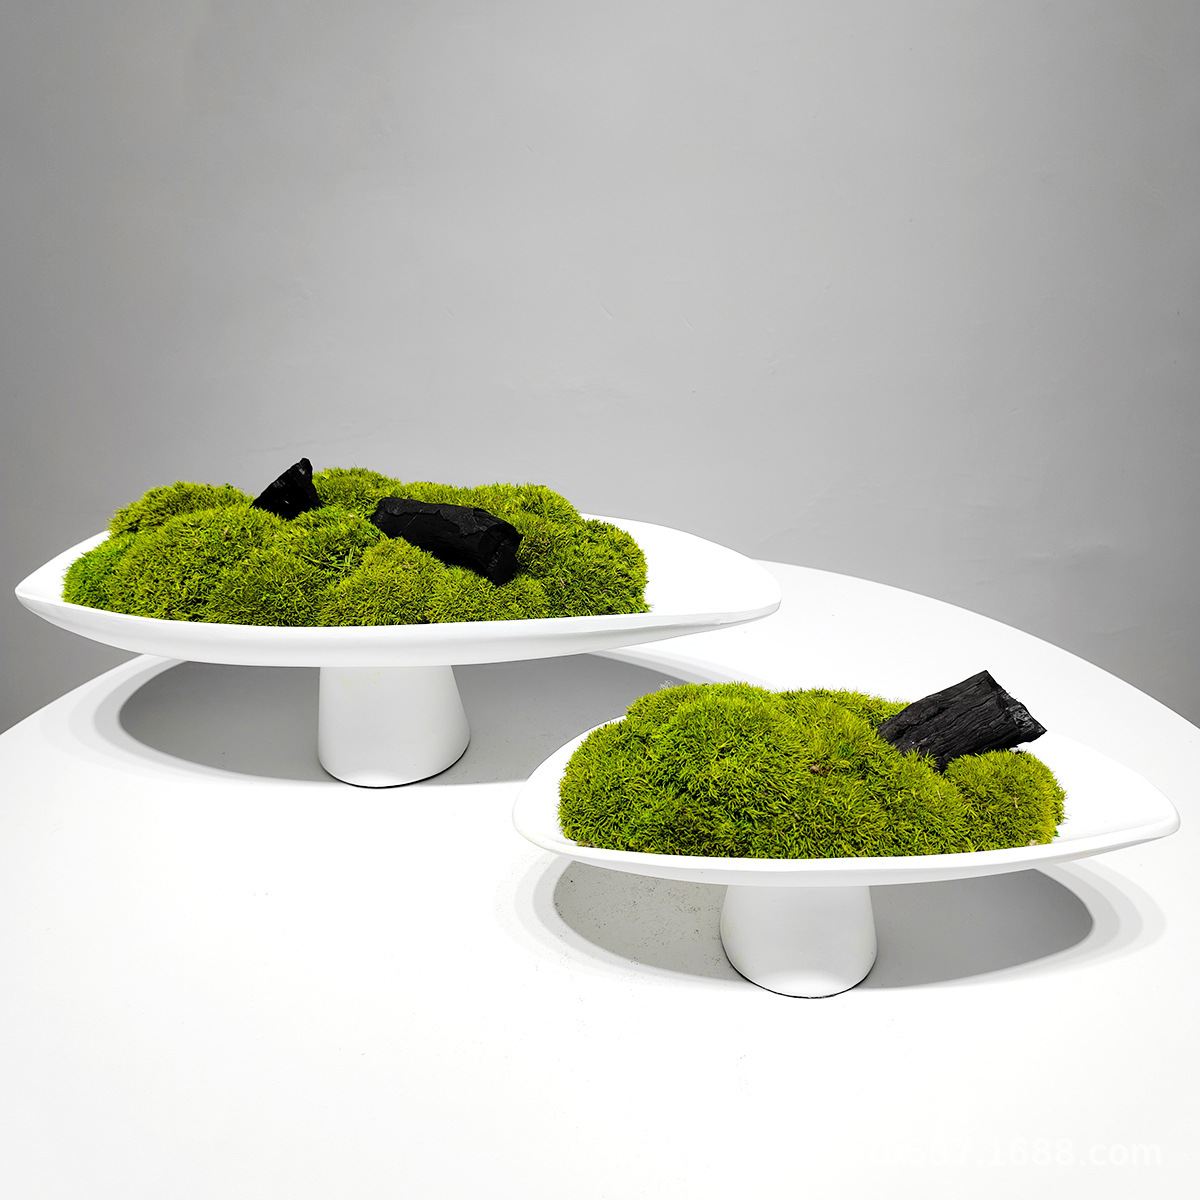 新中式永生苔藓盆栽微景观茶室桌面装饰茶盘仿生青苔室内造景摆件